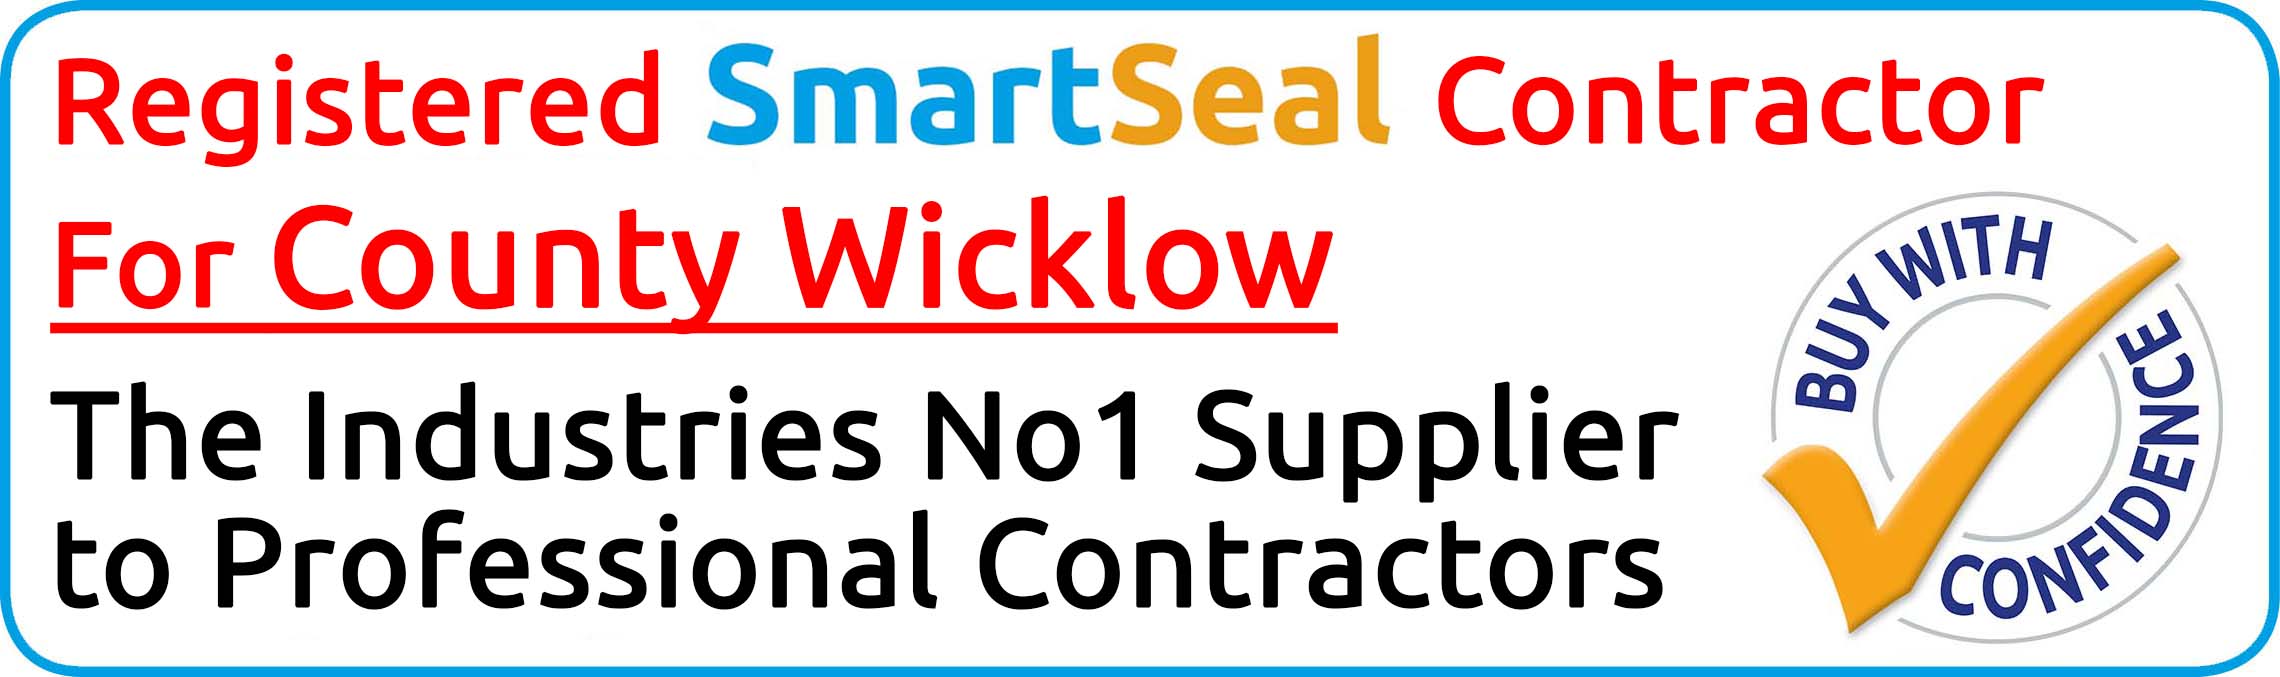 Registered SmartSeal Contractor Wicklow